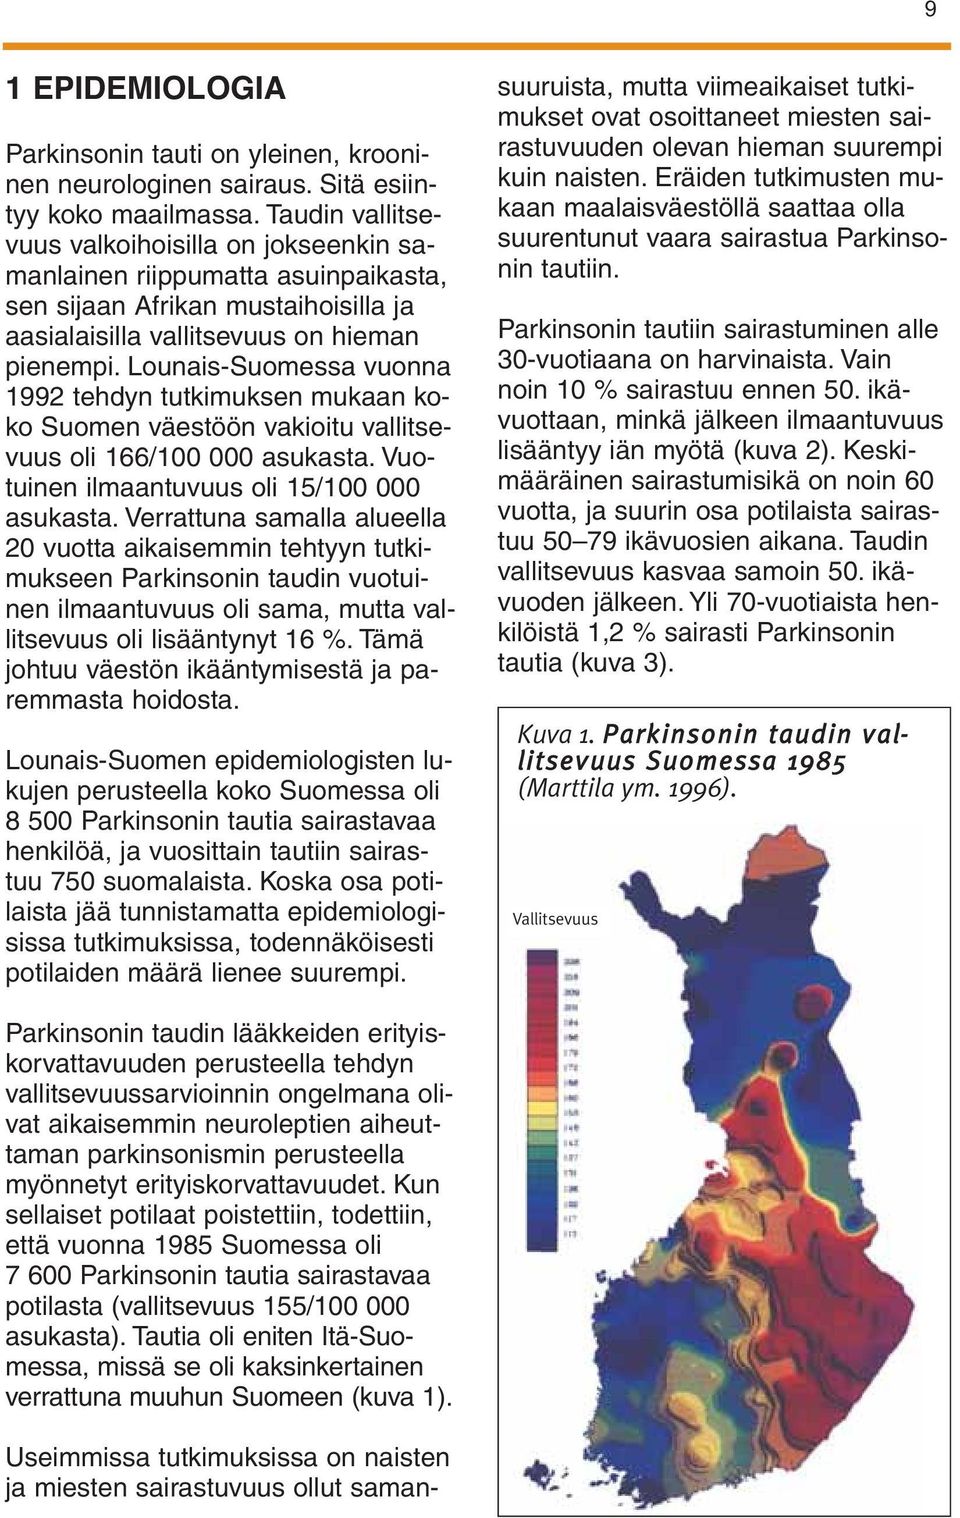 Lounais-Suomessa vuonna 1992 tehdyn tutkimuksen mukaan koko Suomen väestöön vakioitu vallitsevuus oli 166/100 000 asukasta. Vuotuinen ilmaantuvuus oli 15/100 000 asukasta.